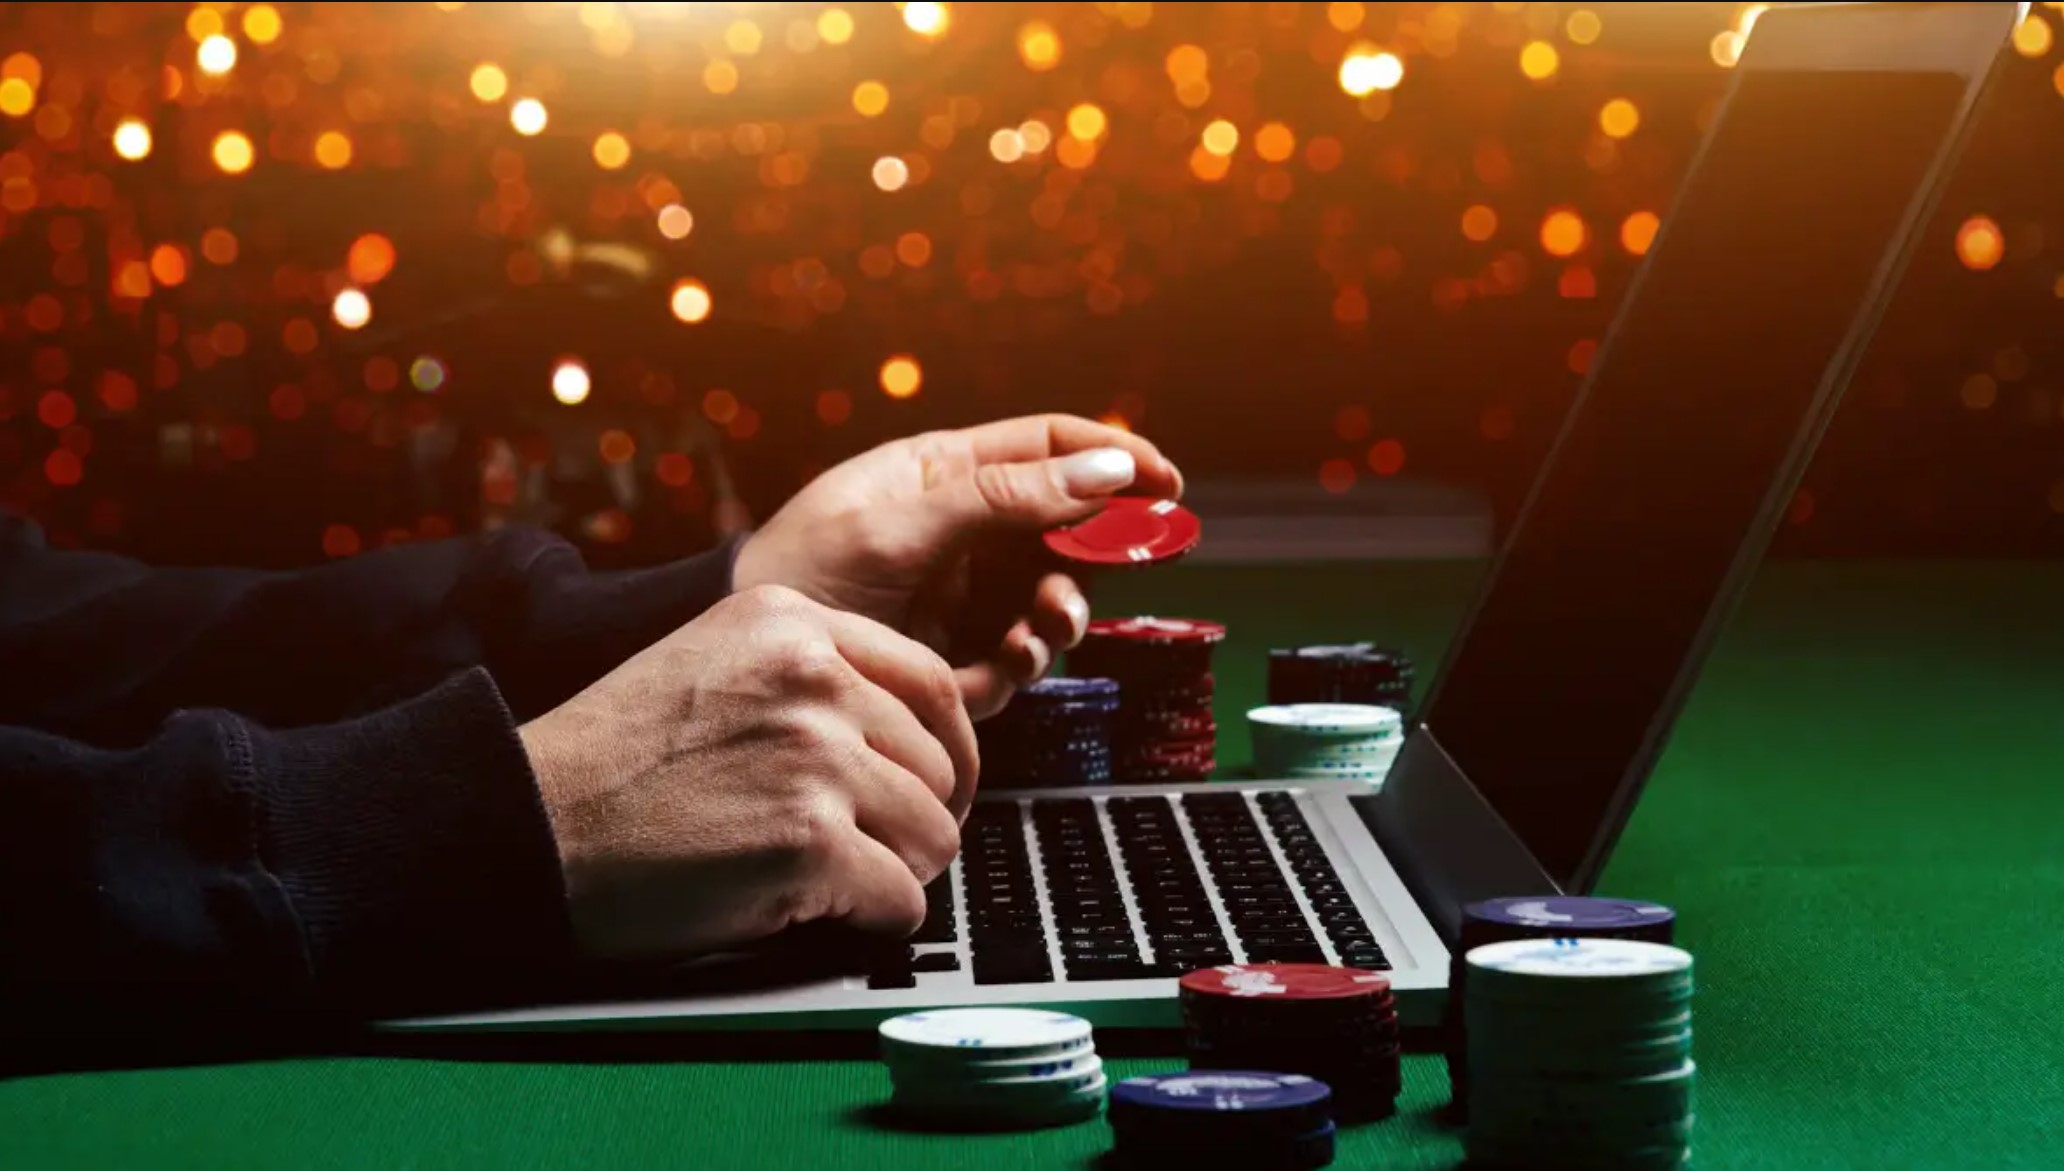 Seriöse Online Casinos Österreich - Was tun bei Ablehnung